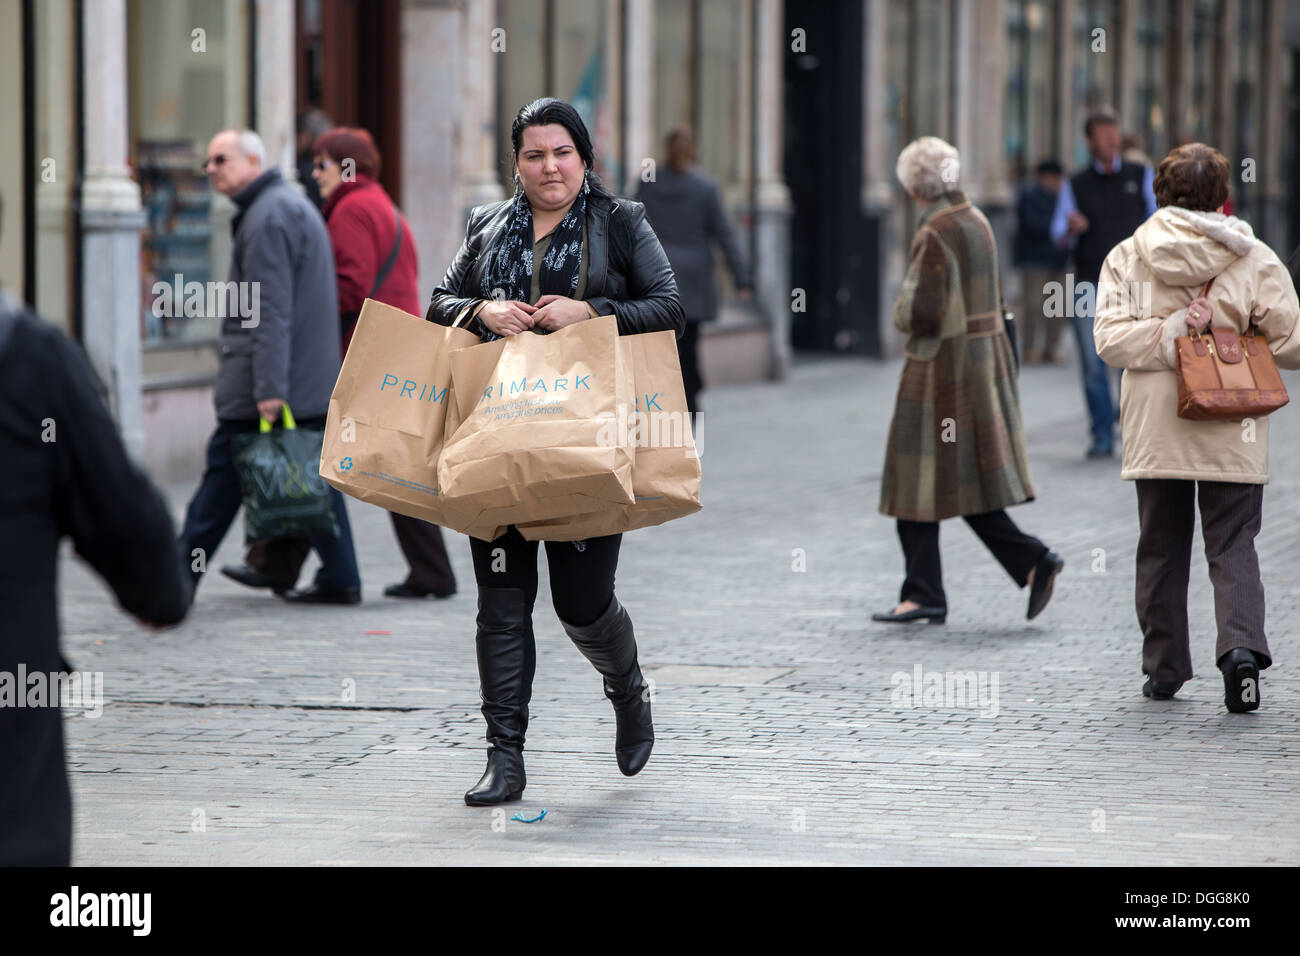 Una donna shopper passeggiate attraverso il centro di Liverpool che trasportano Primark borse per lo shopping Foto Stock